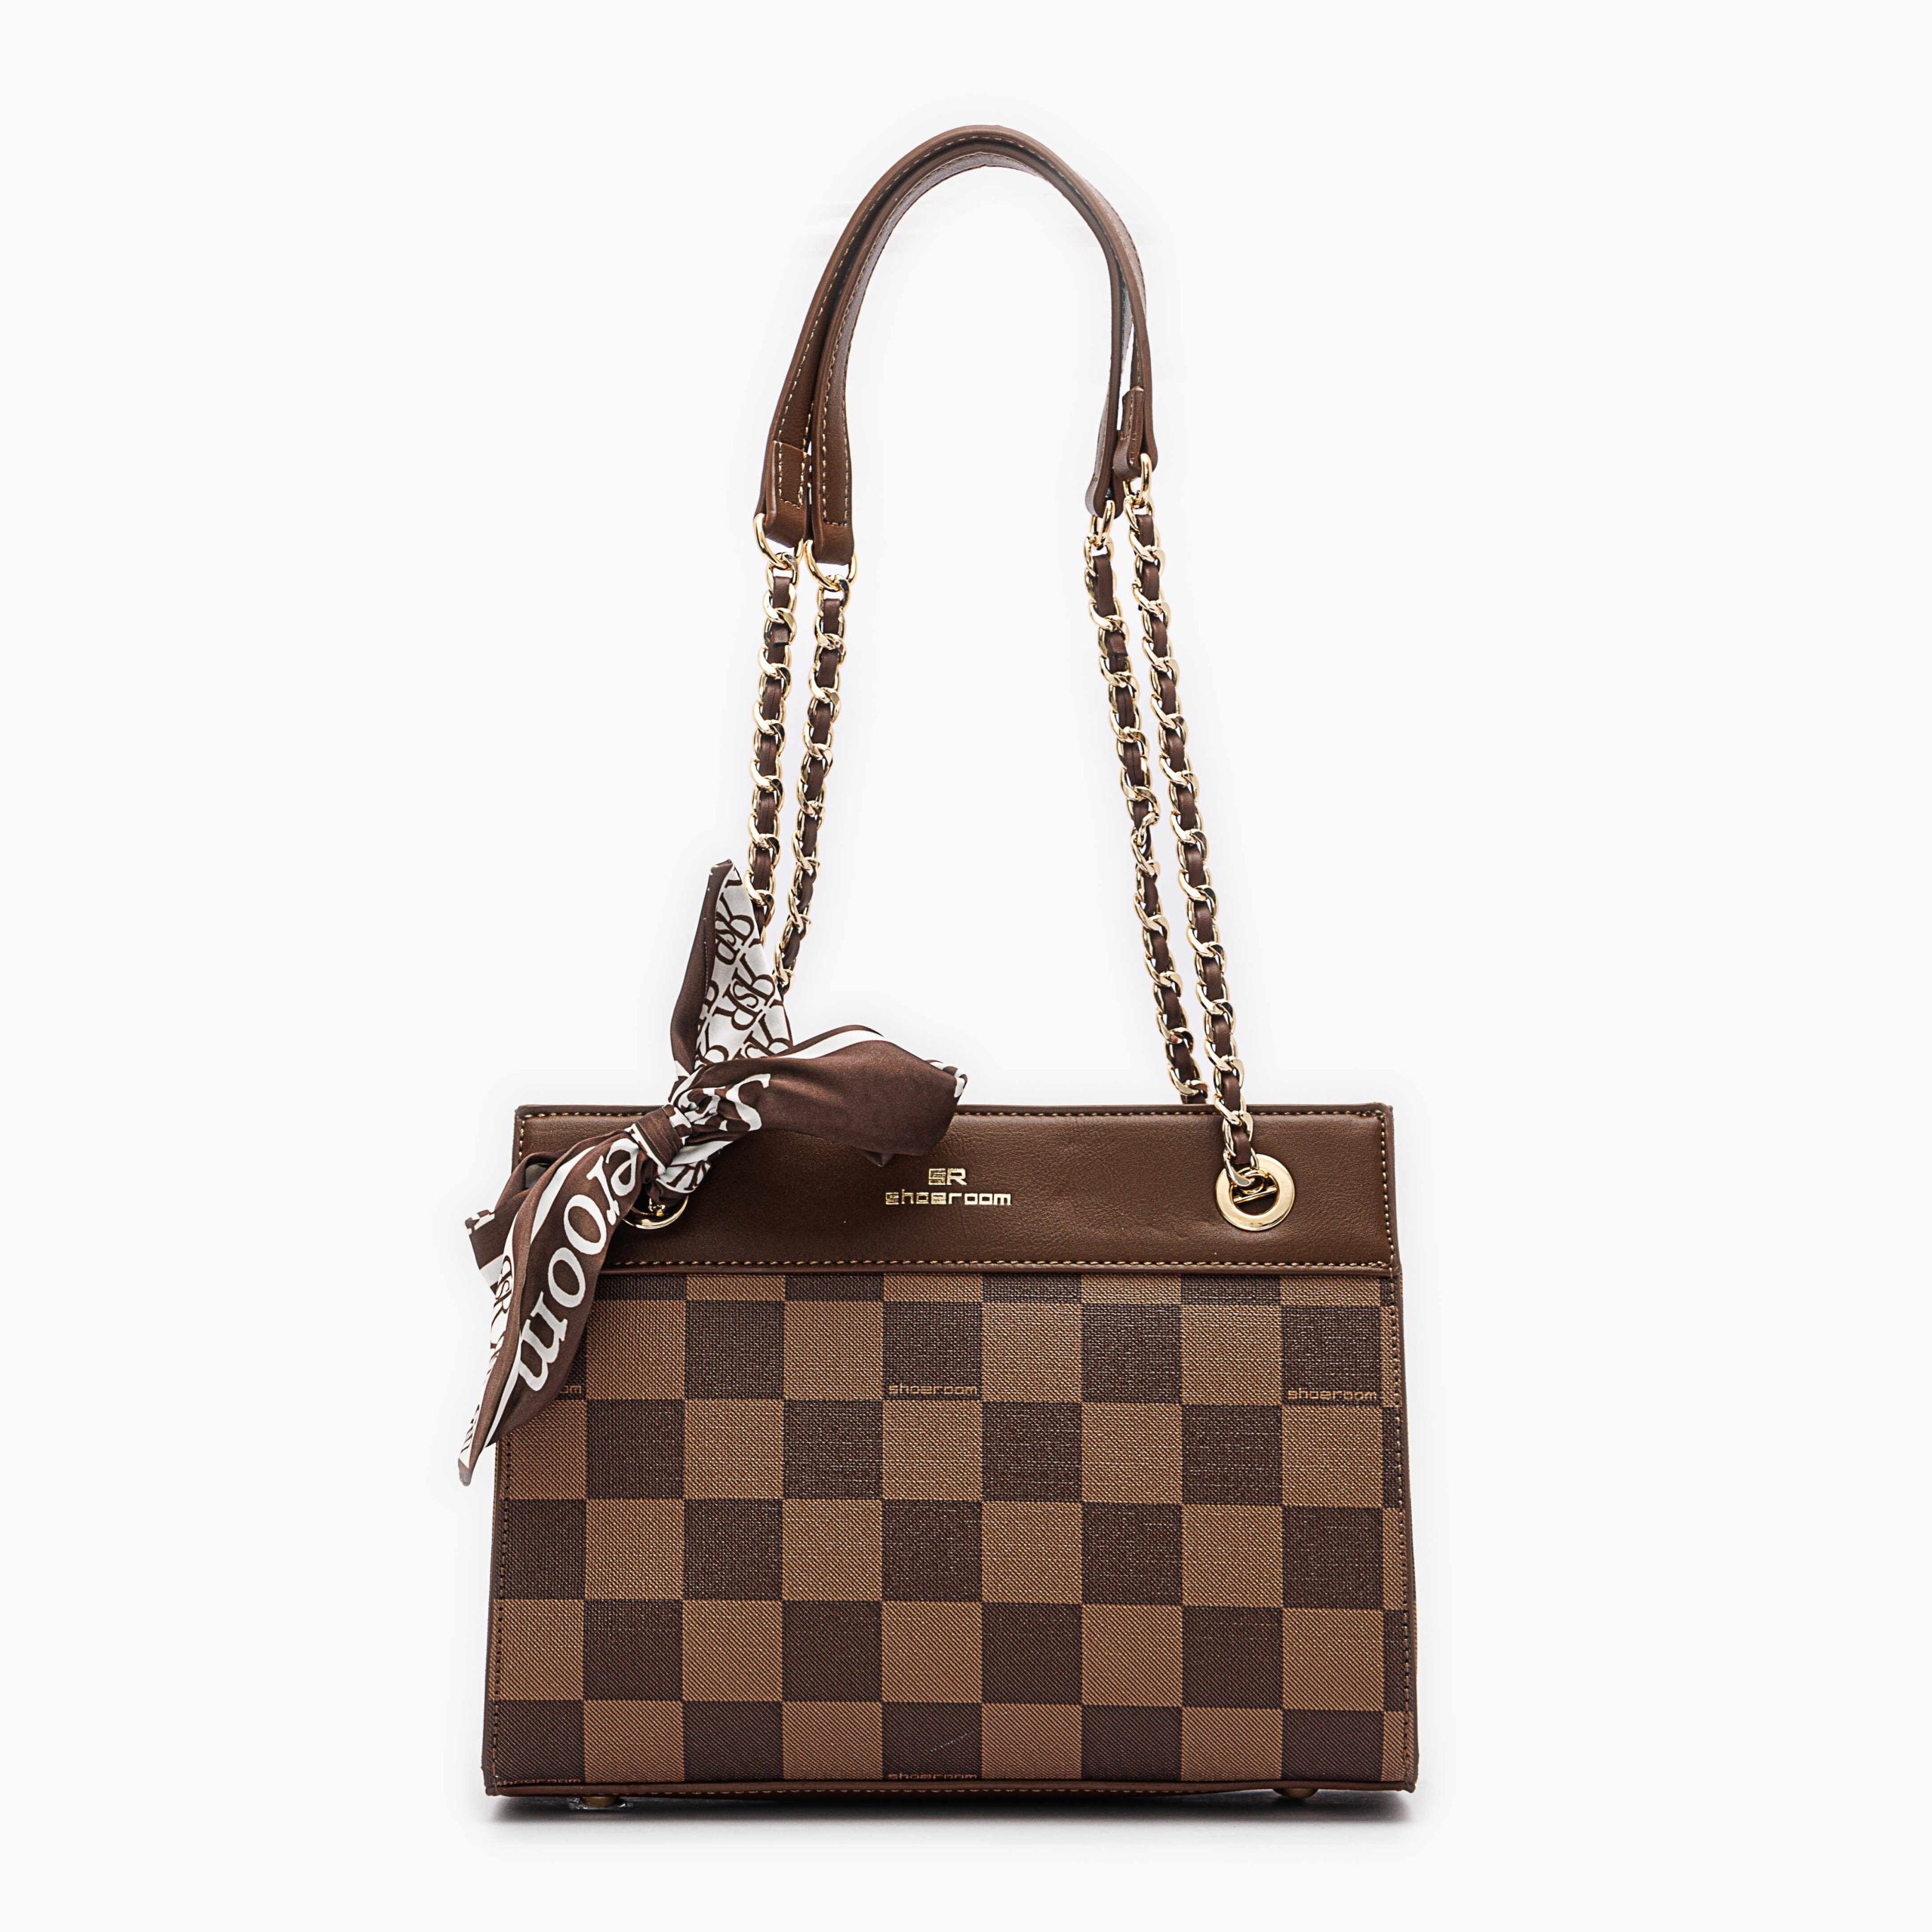 Shoeroom Woman Handbags B1340